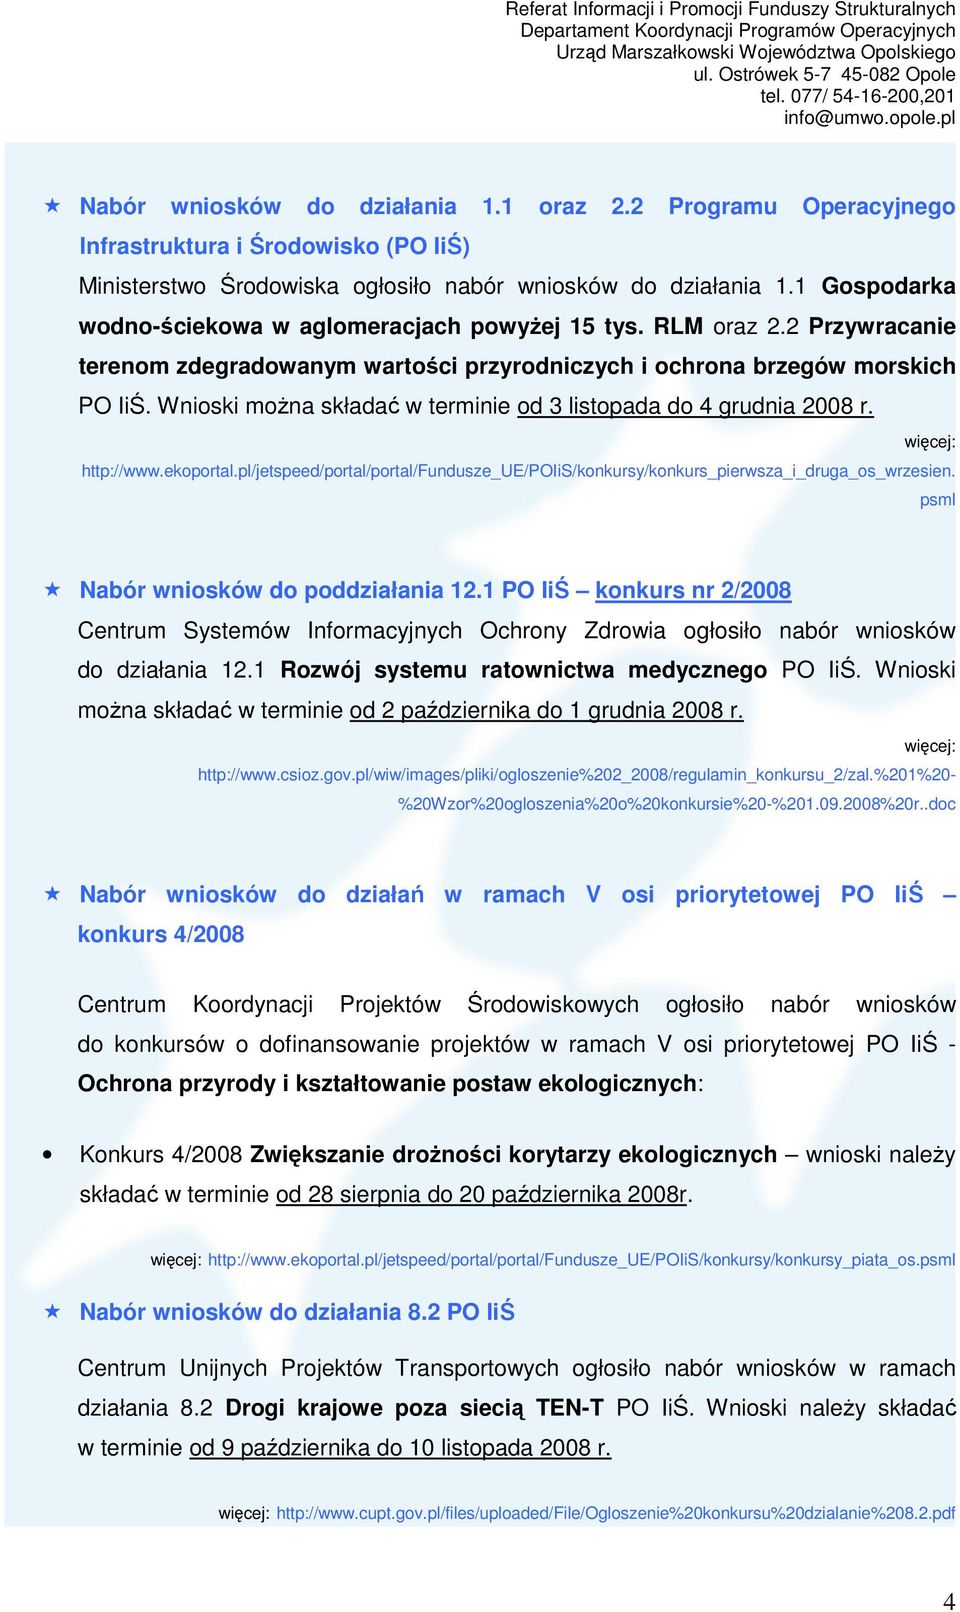 Wnioski moŝna składać w terminie od 3 listopada do 4 grudnia 2008 r. http://www.ekoportal.pl/jetspeed/portal/portal/fundusze_ue/poiis/konkursy/konkurs_pierwsza_i_druga_os_wrzesien.